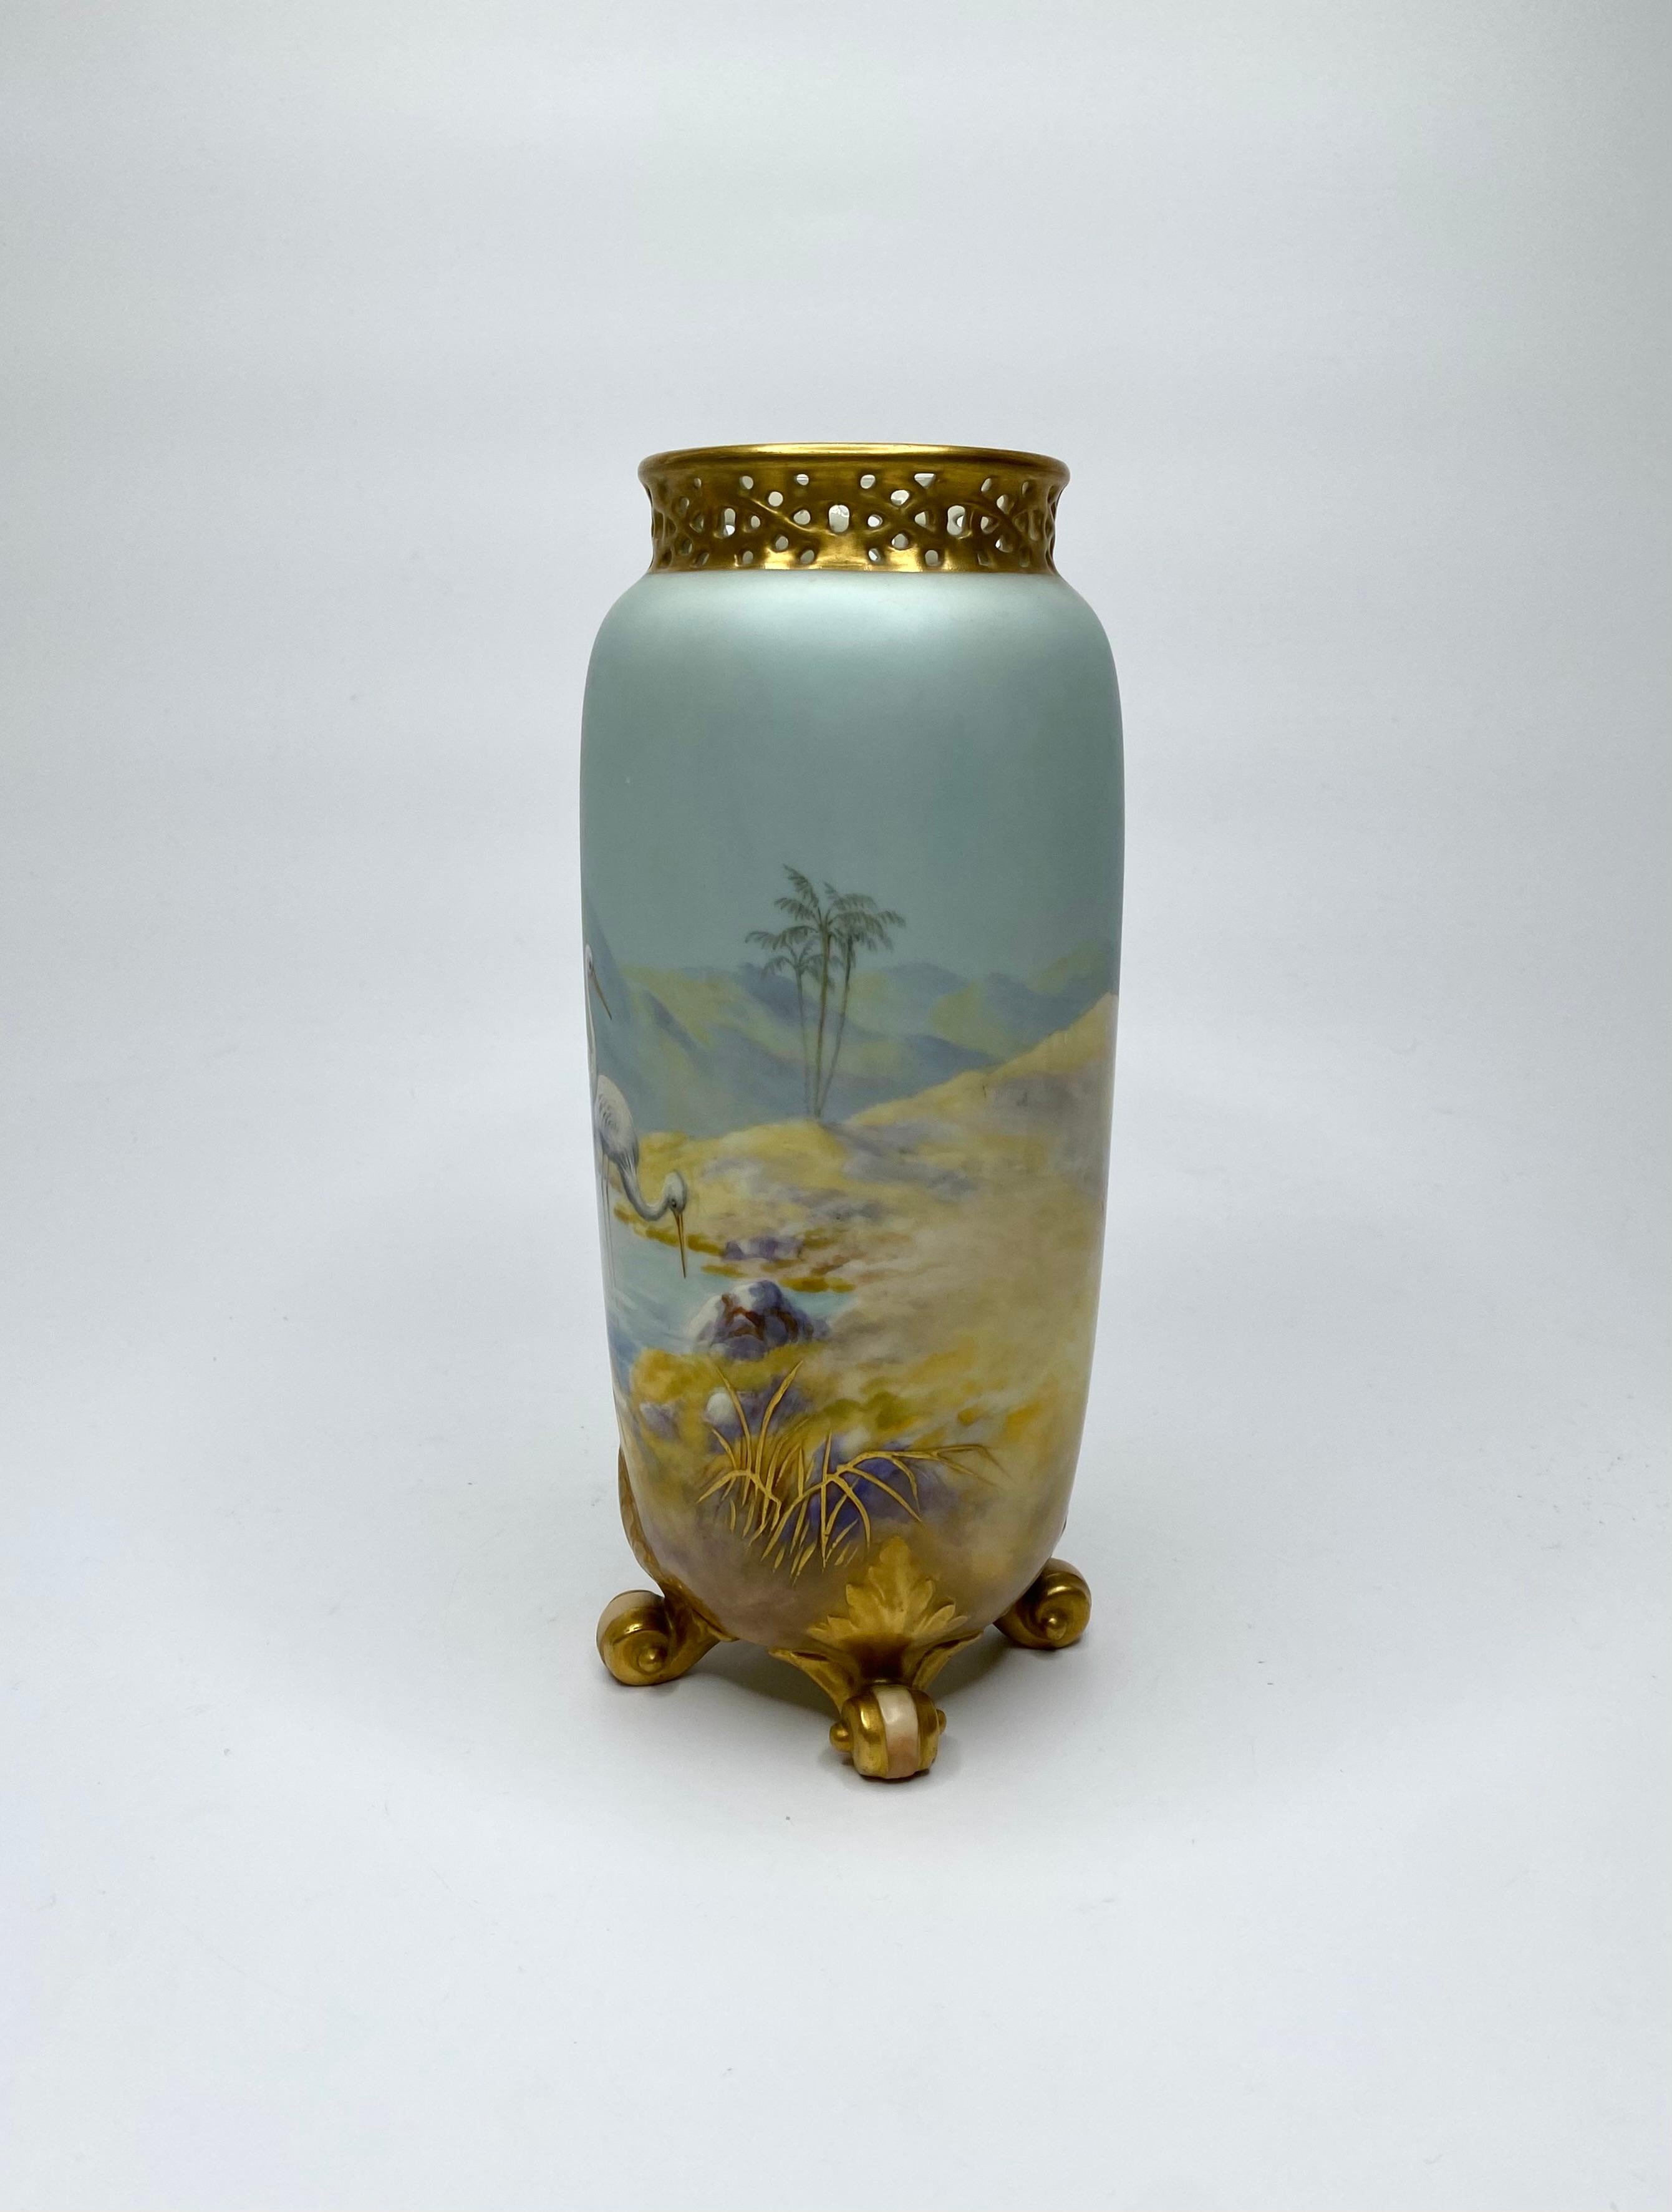 Vase en porcelaine Royal Worcester, Cigognes, peint par George Johnson, daté de 1919. Le corps cylindrique, finement peint, présente une étude de cigognes, dans une oasis, dans un paysage désertique continu.
Le dos est réticulé et doré, et le tout